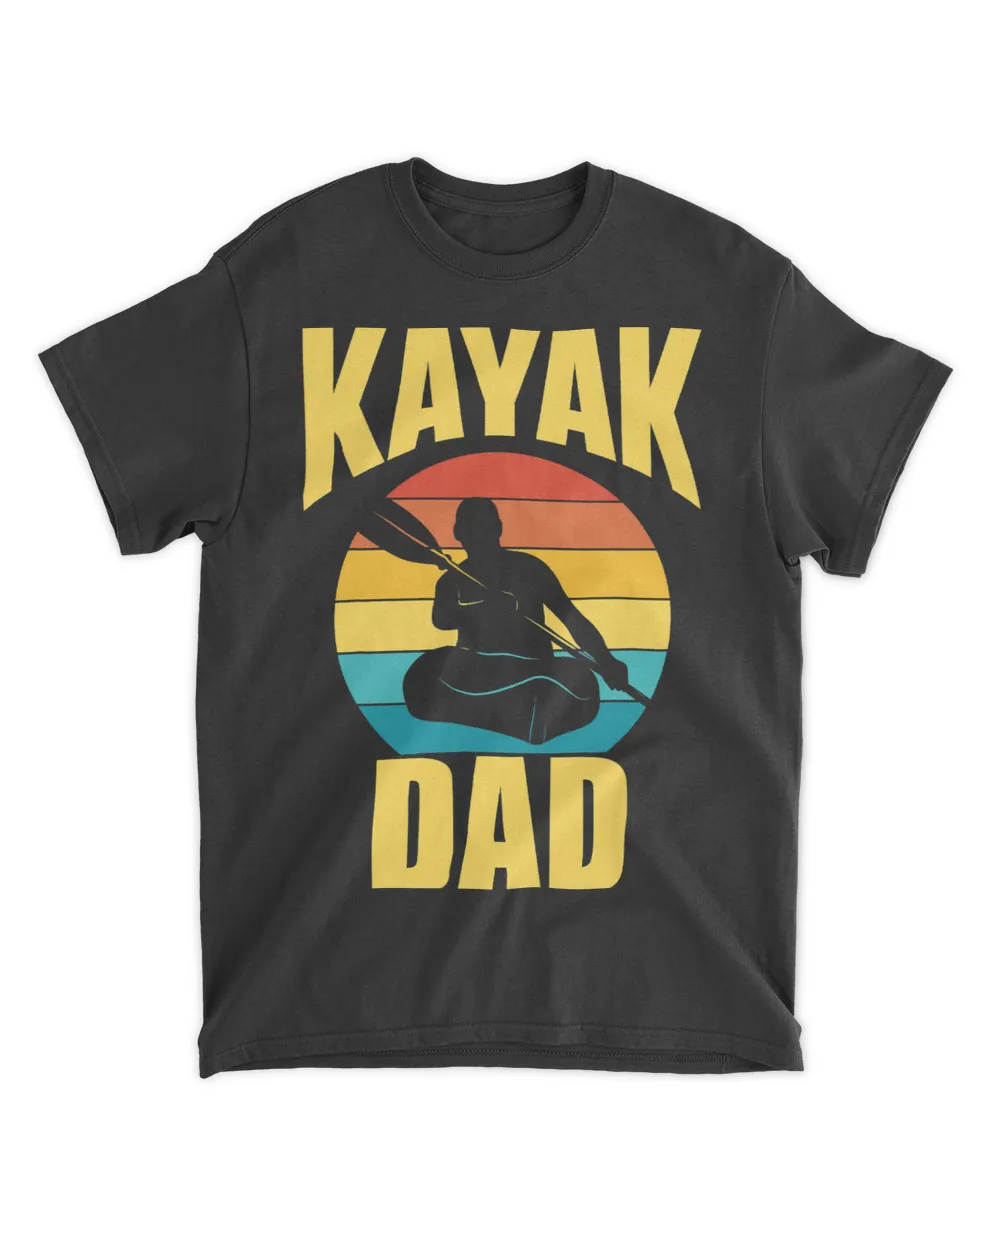 Kayak Water Dad Kayakist Kayaks Hobby Kayaking Father Daddy Papa